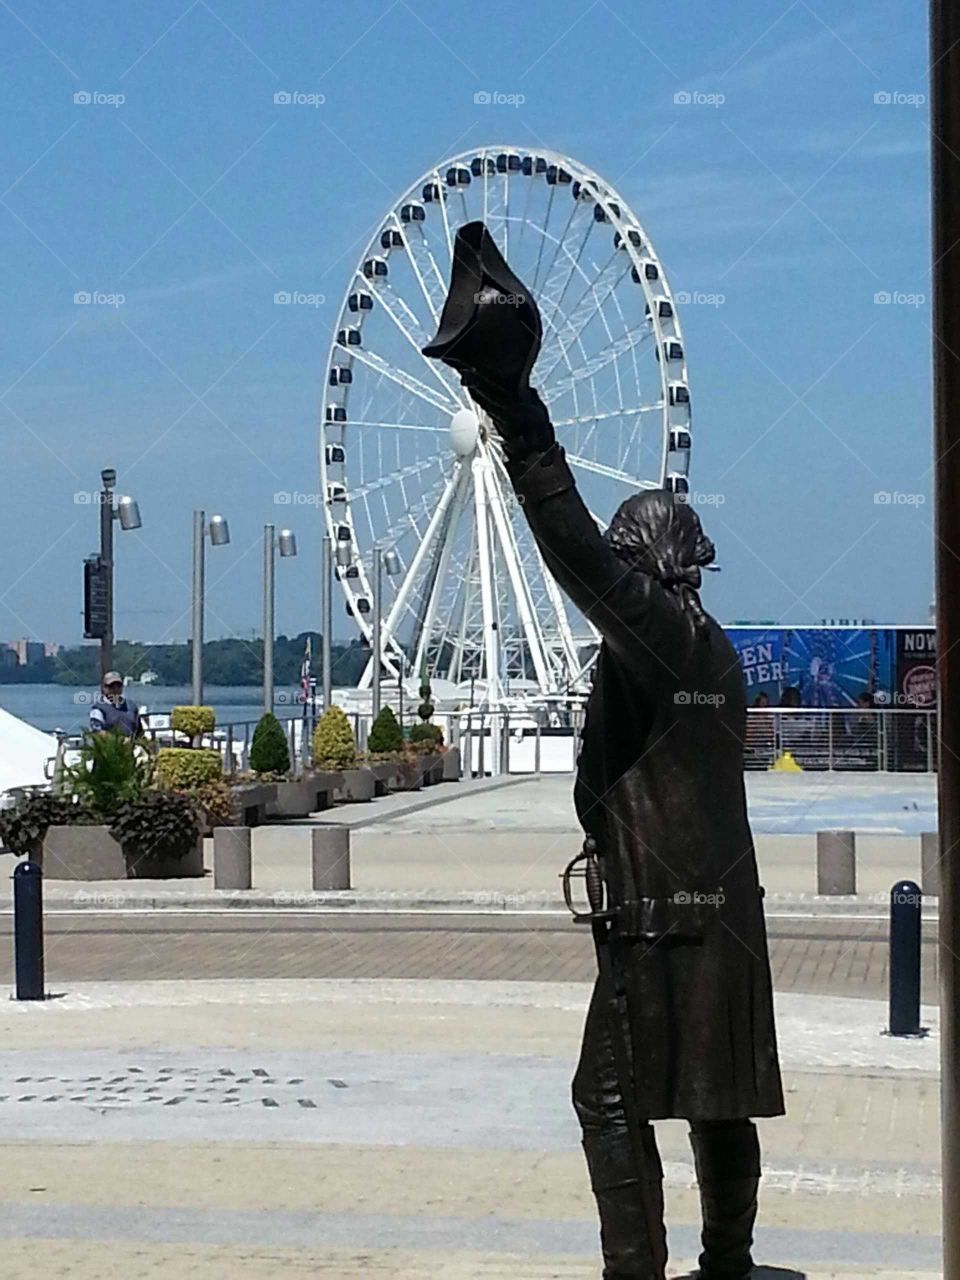 Ferris wheel, water, statue